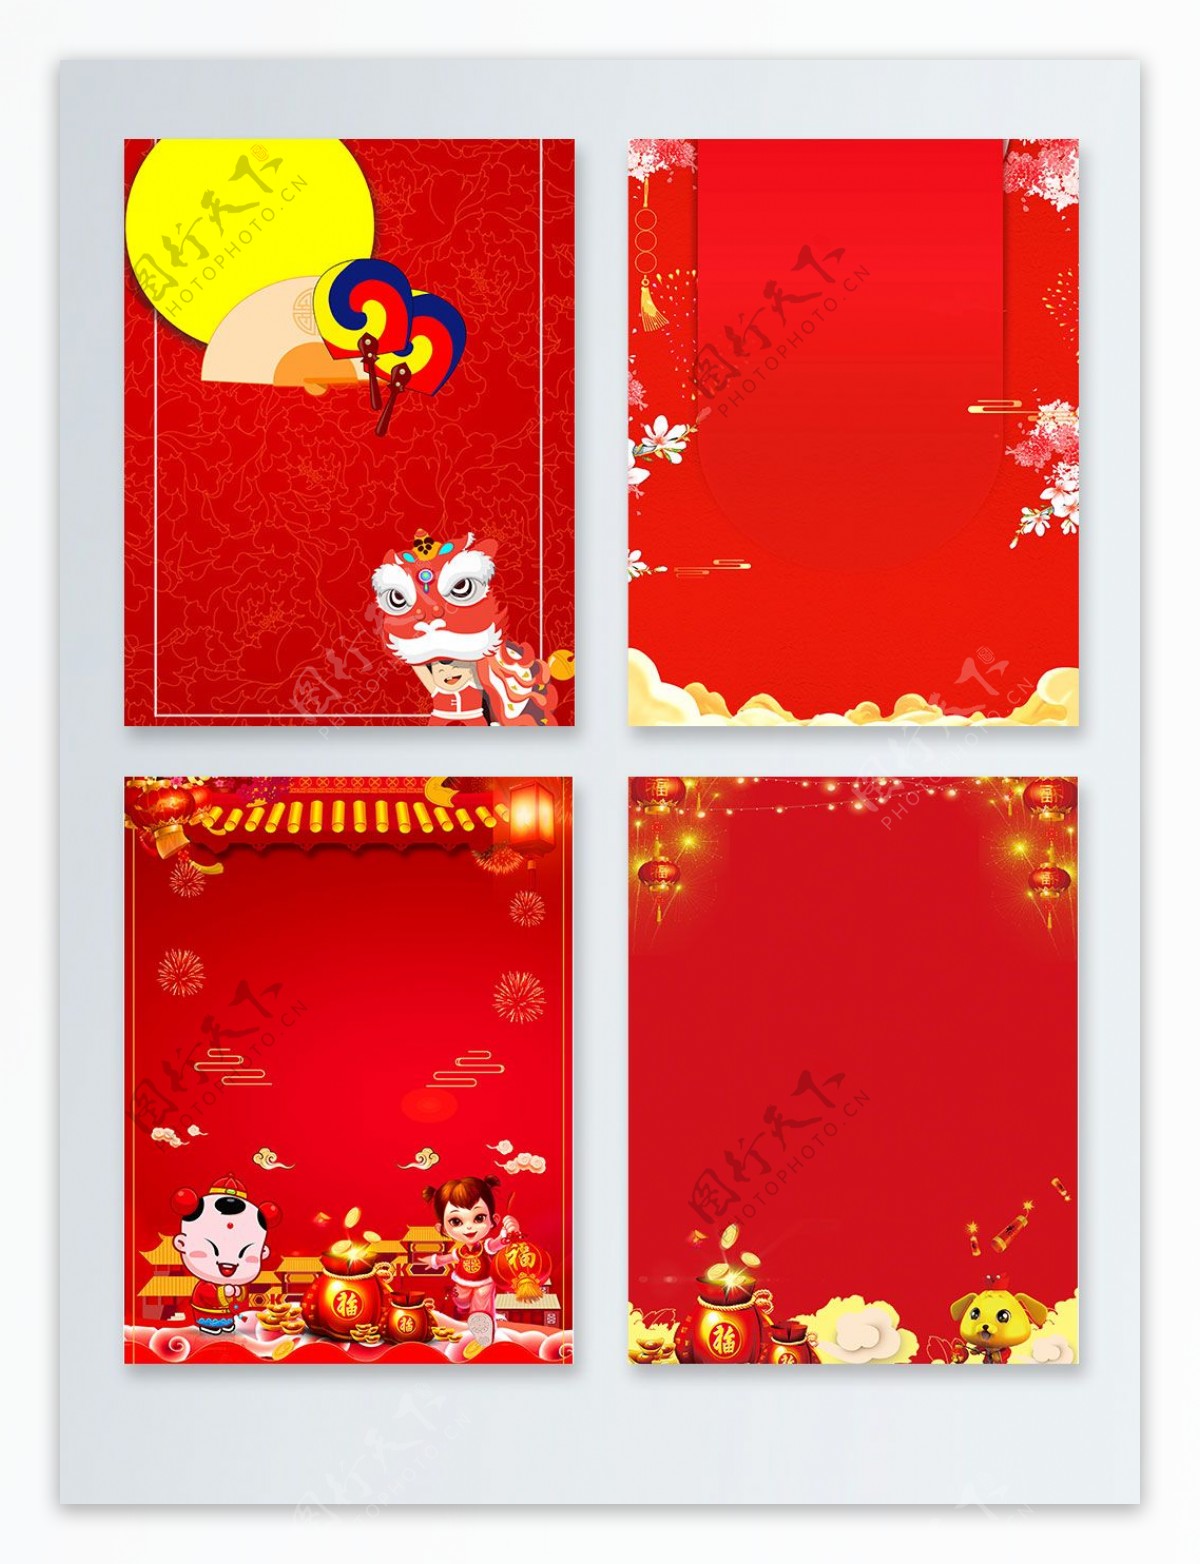 红色喜庆狗年节日卡通背景